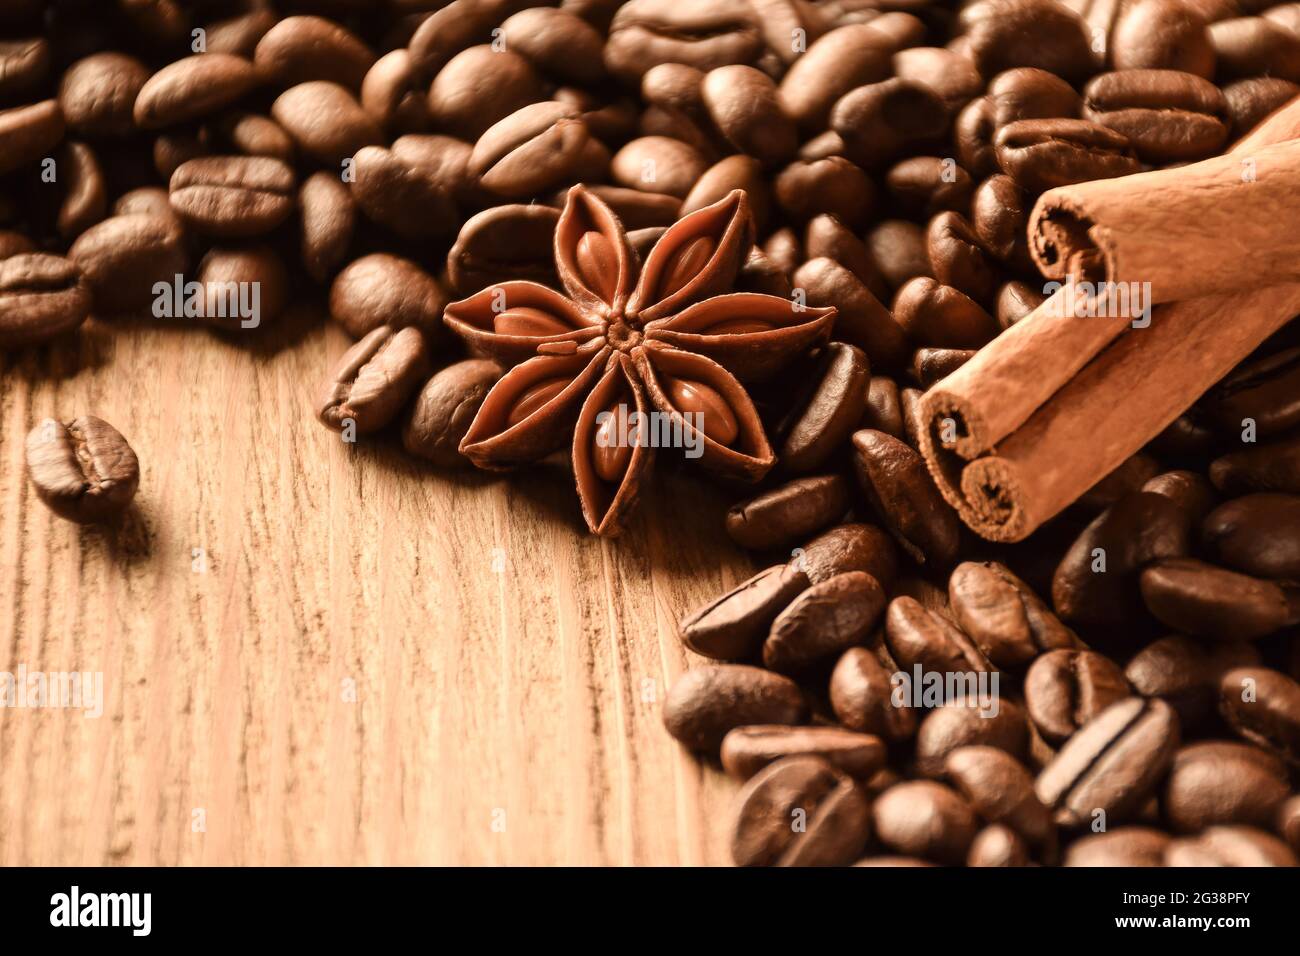 L'anis, la cannelle et de nombreux grains de café se trouvent sur une table en bois brun. Il y a un espace vide en bas à gauche. Banque D'Images